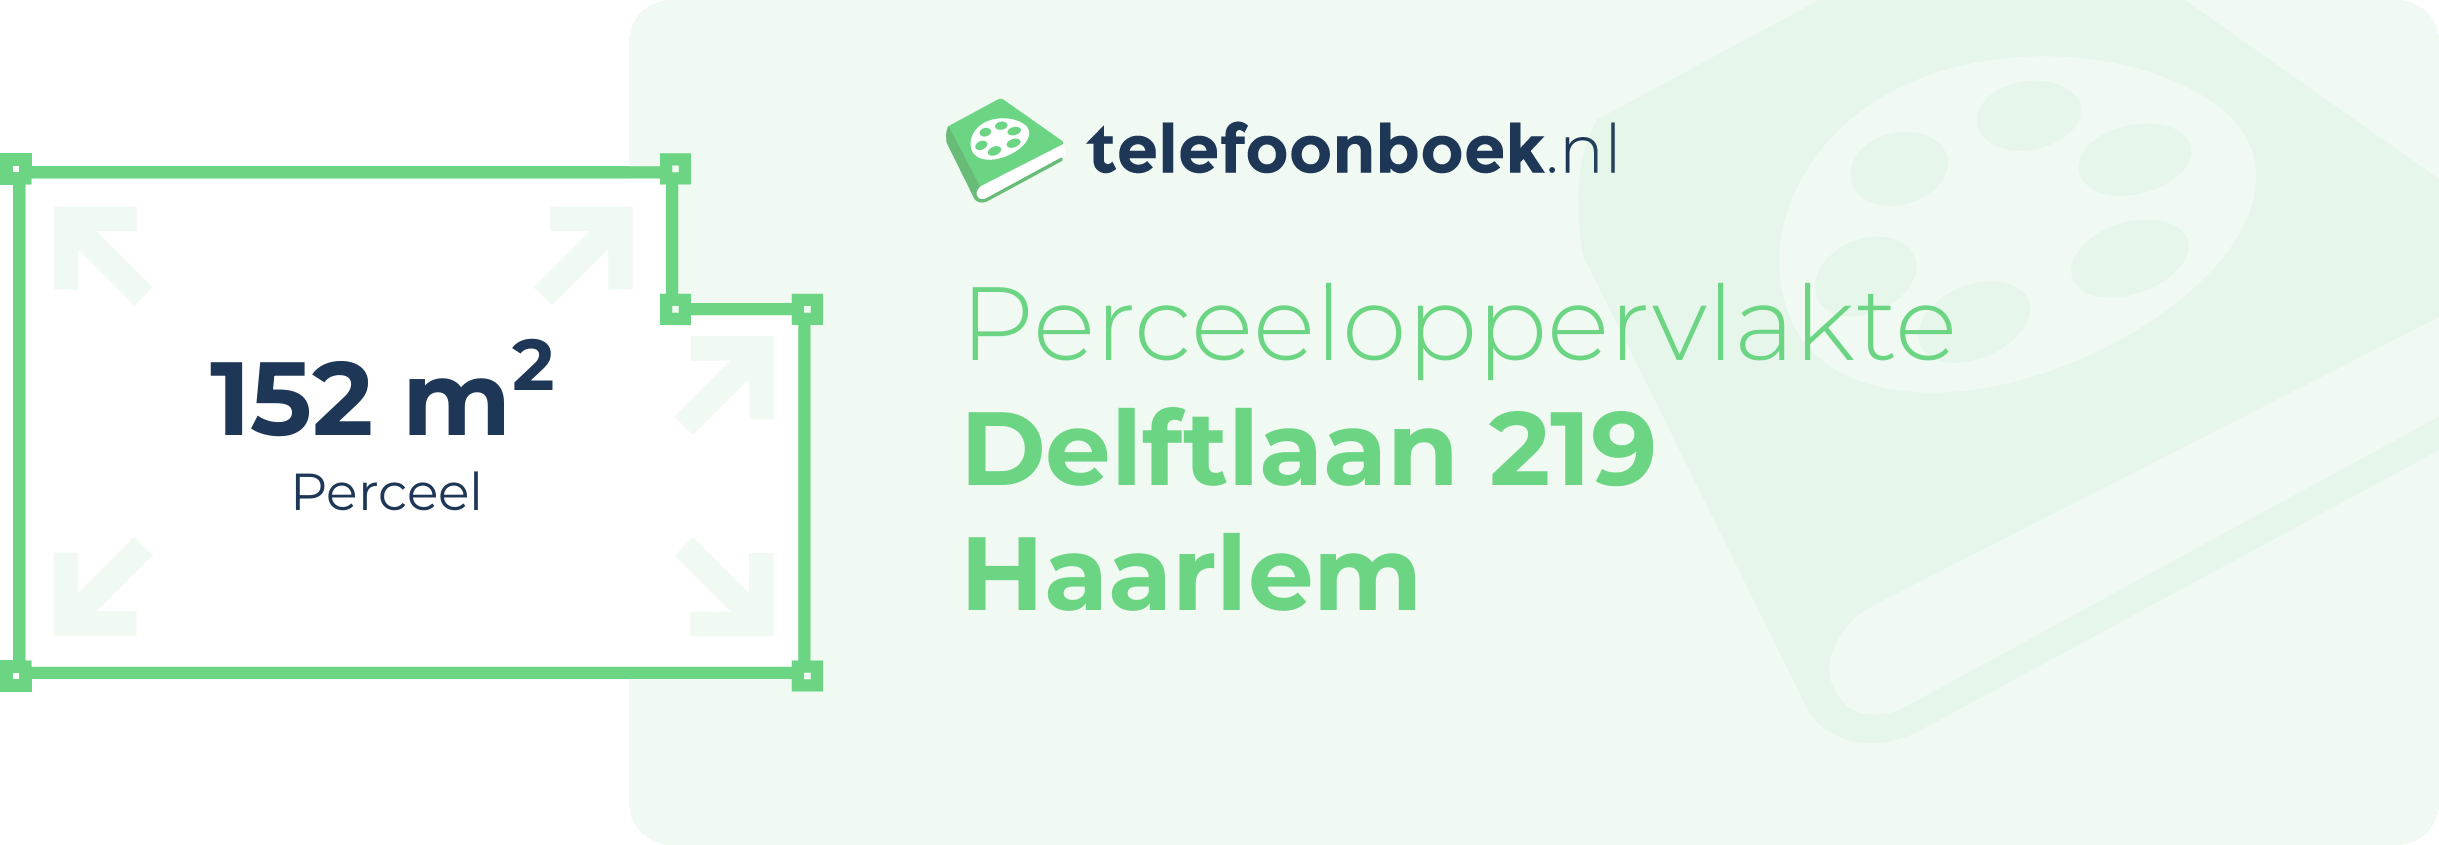 Perceeloppervlakte Delftlaan 219 Haarlem